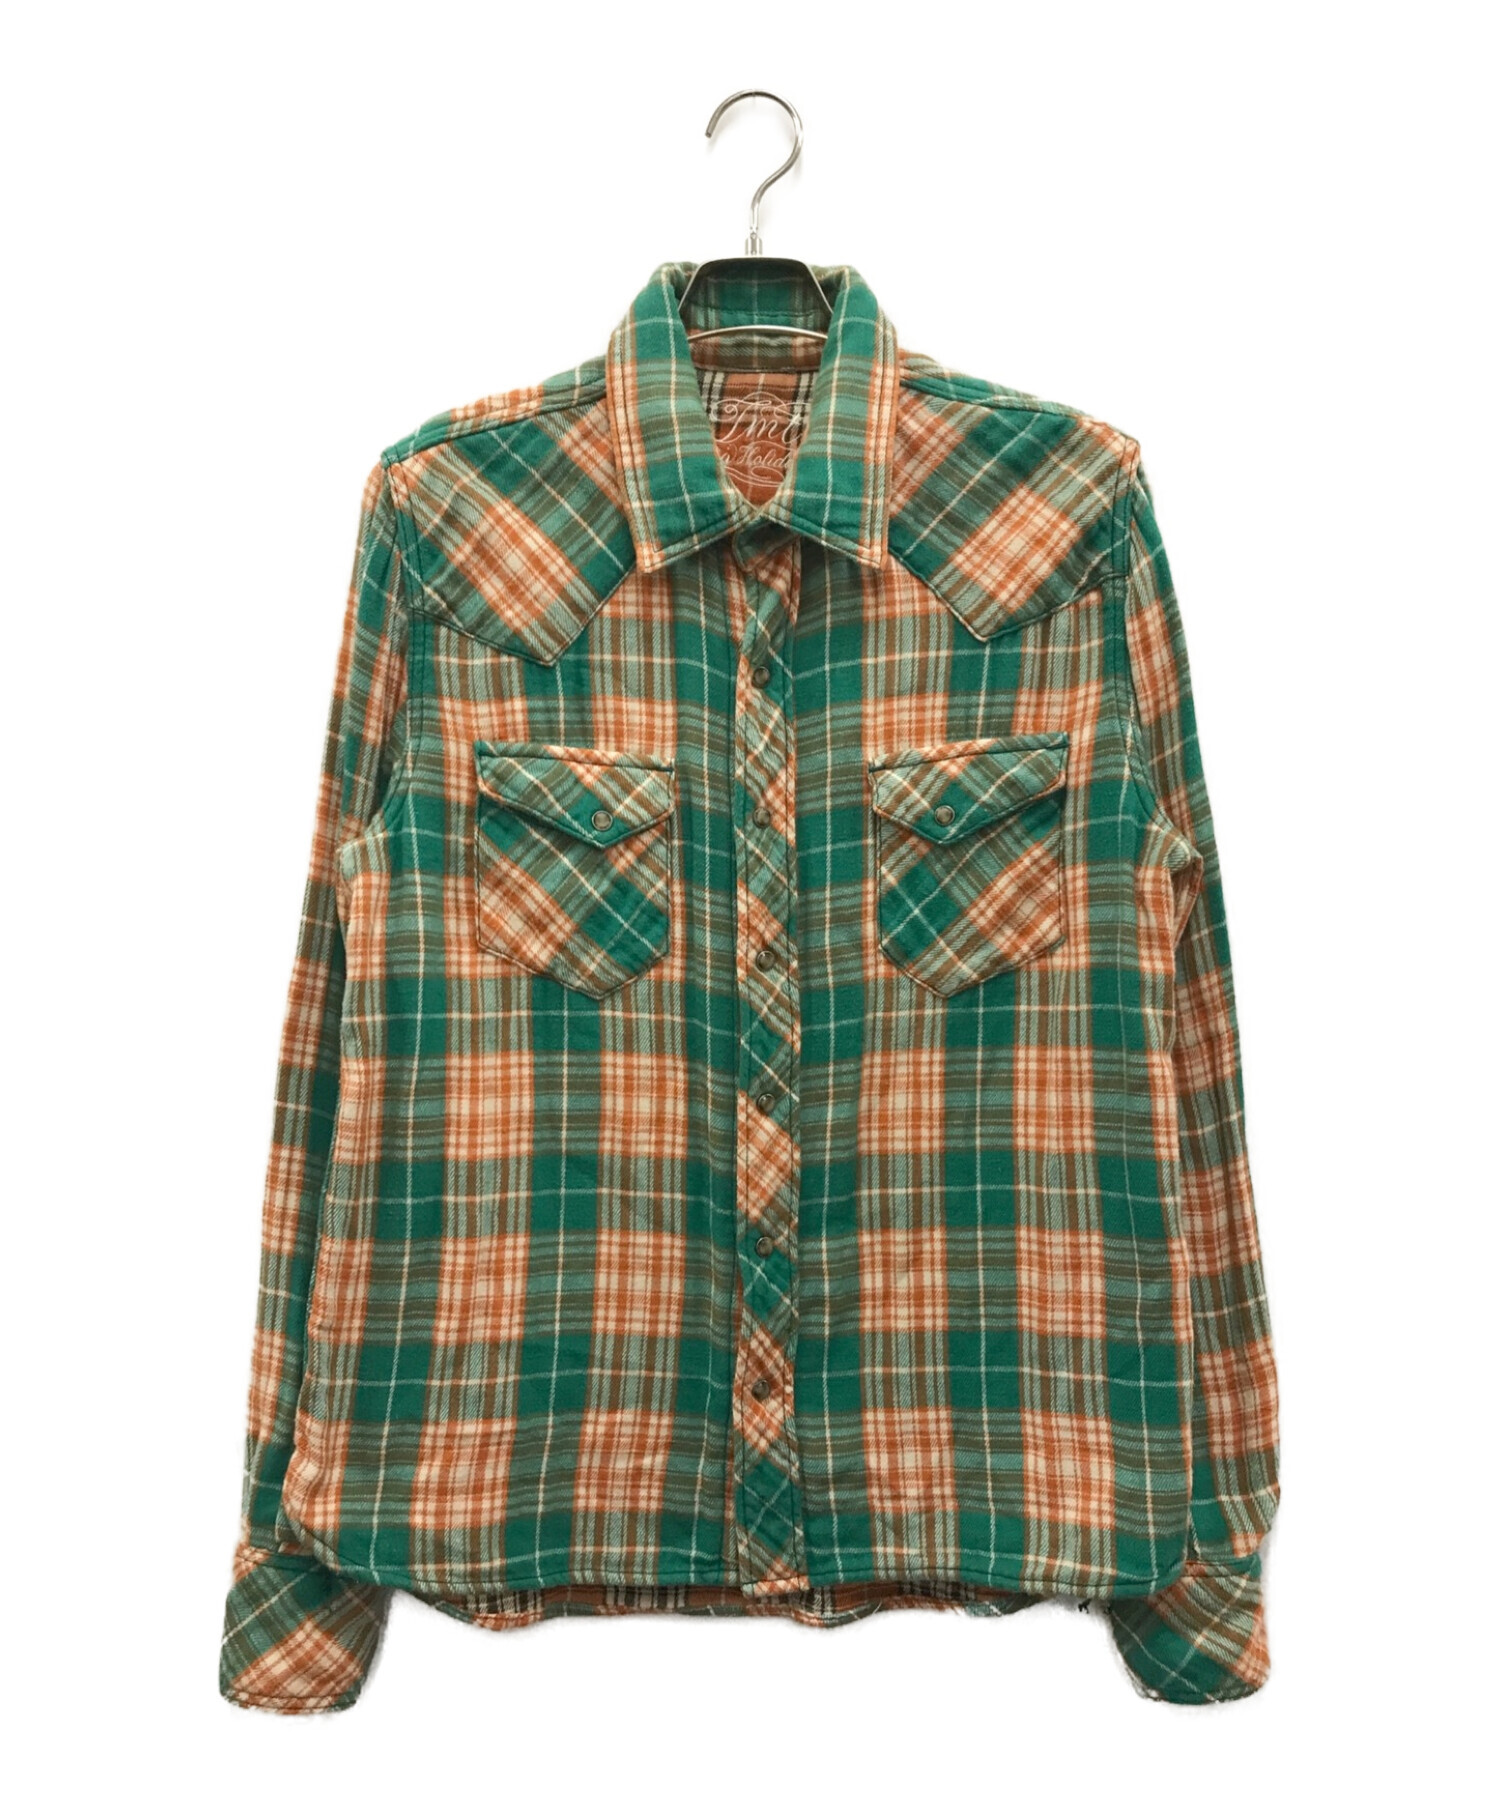 TMT (ティーエムティー) ダブルガーゼチェックシャツ グリーン×オレンジ サイズ:L